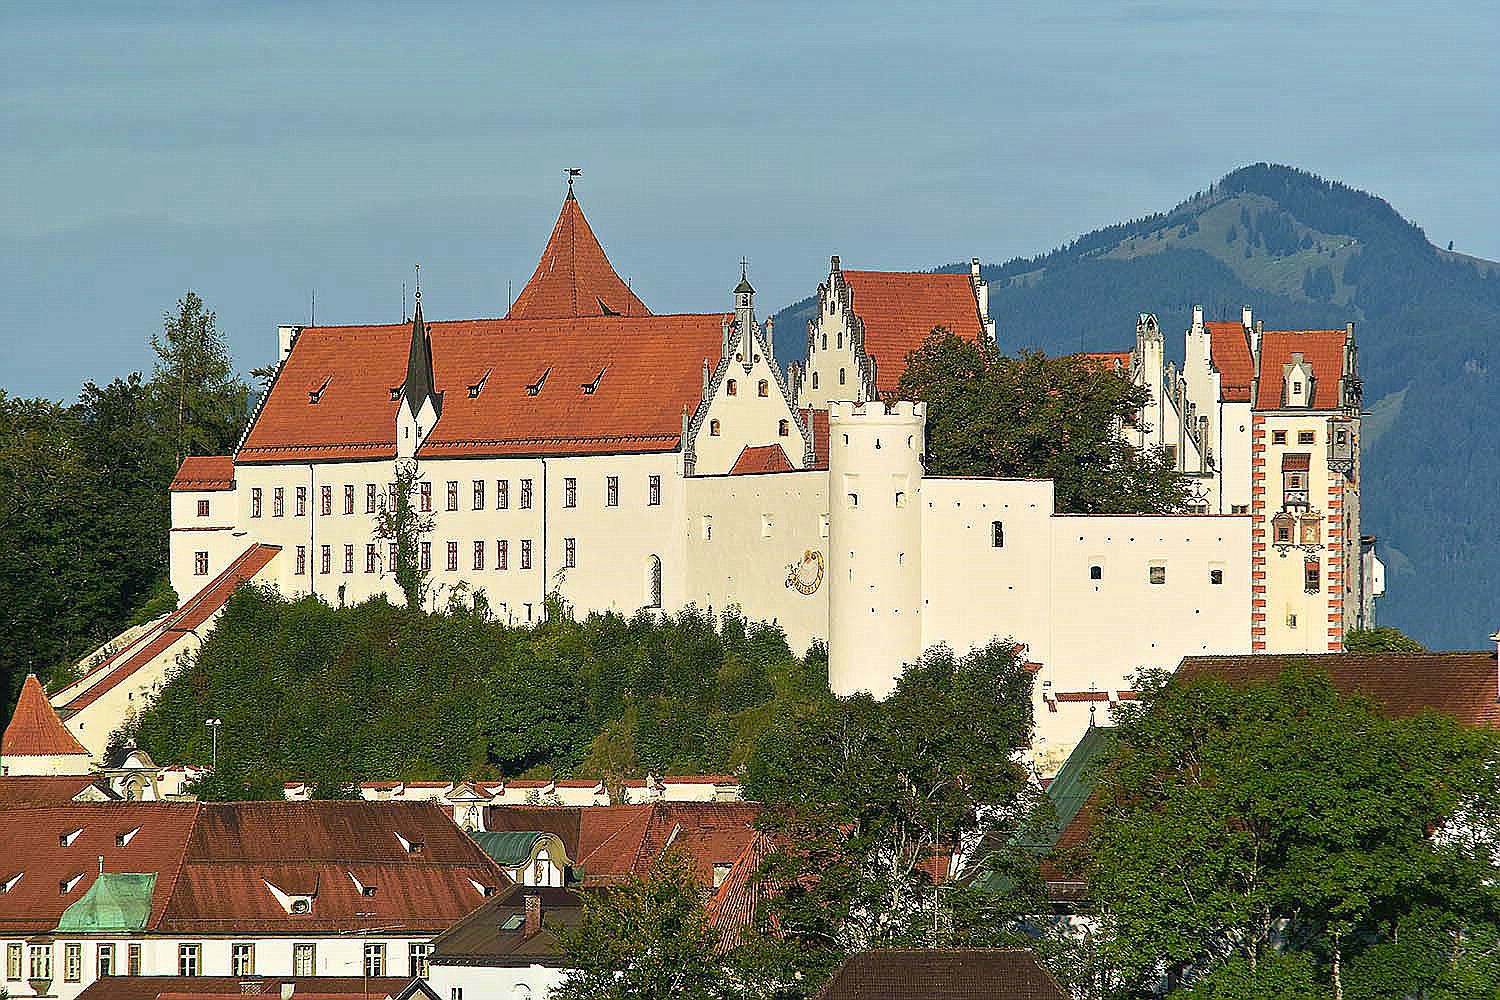 Hohes Schloss von Süd-Ost